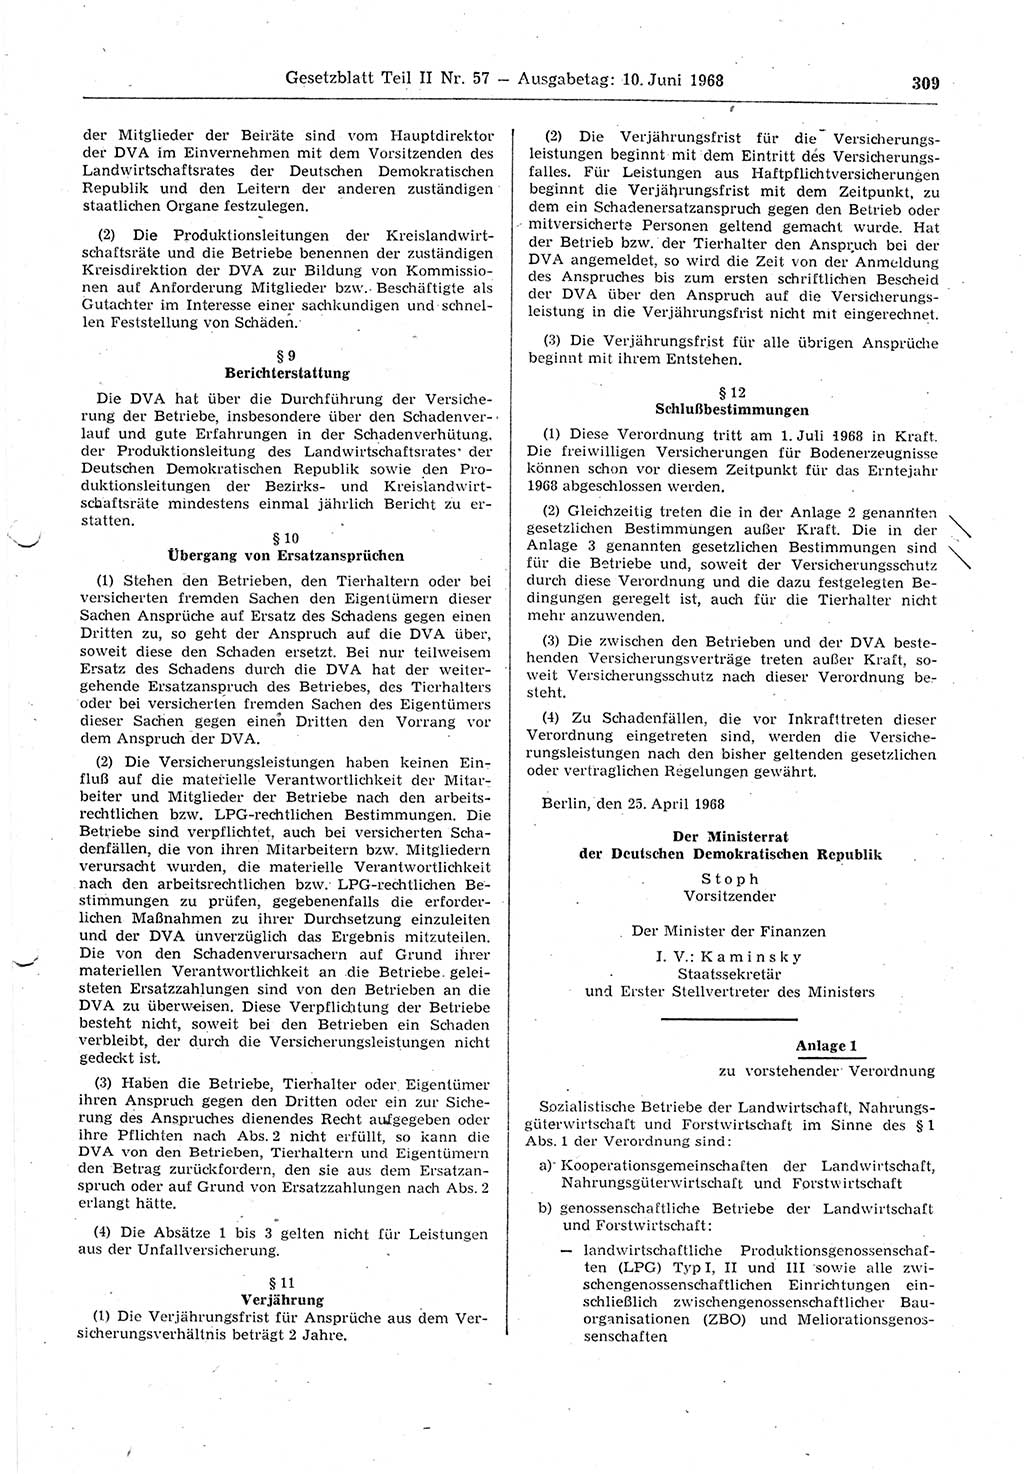 Gesetzblatt (GBl.) der Deutschen Demokratischen Republik (DDR) Teil ⅠⅠ 1968, Seite 309 (GBl. DDR ⅠⅠ 1968, S. 309)